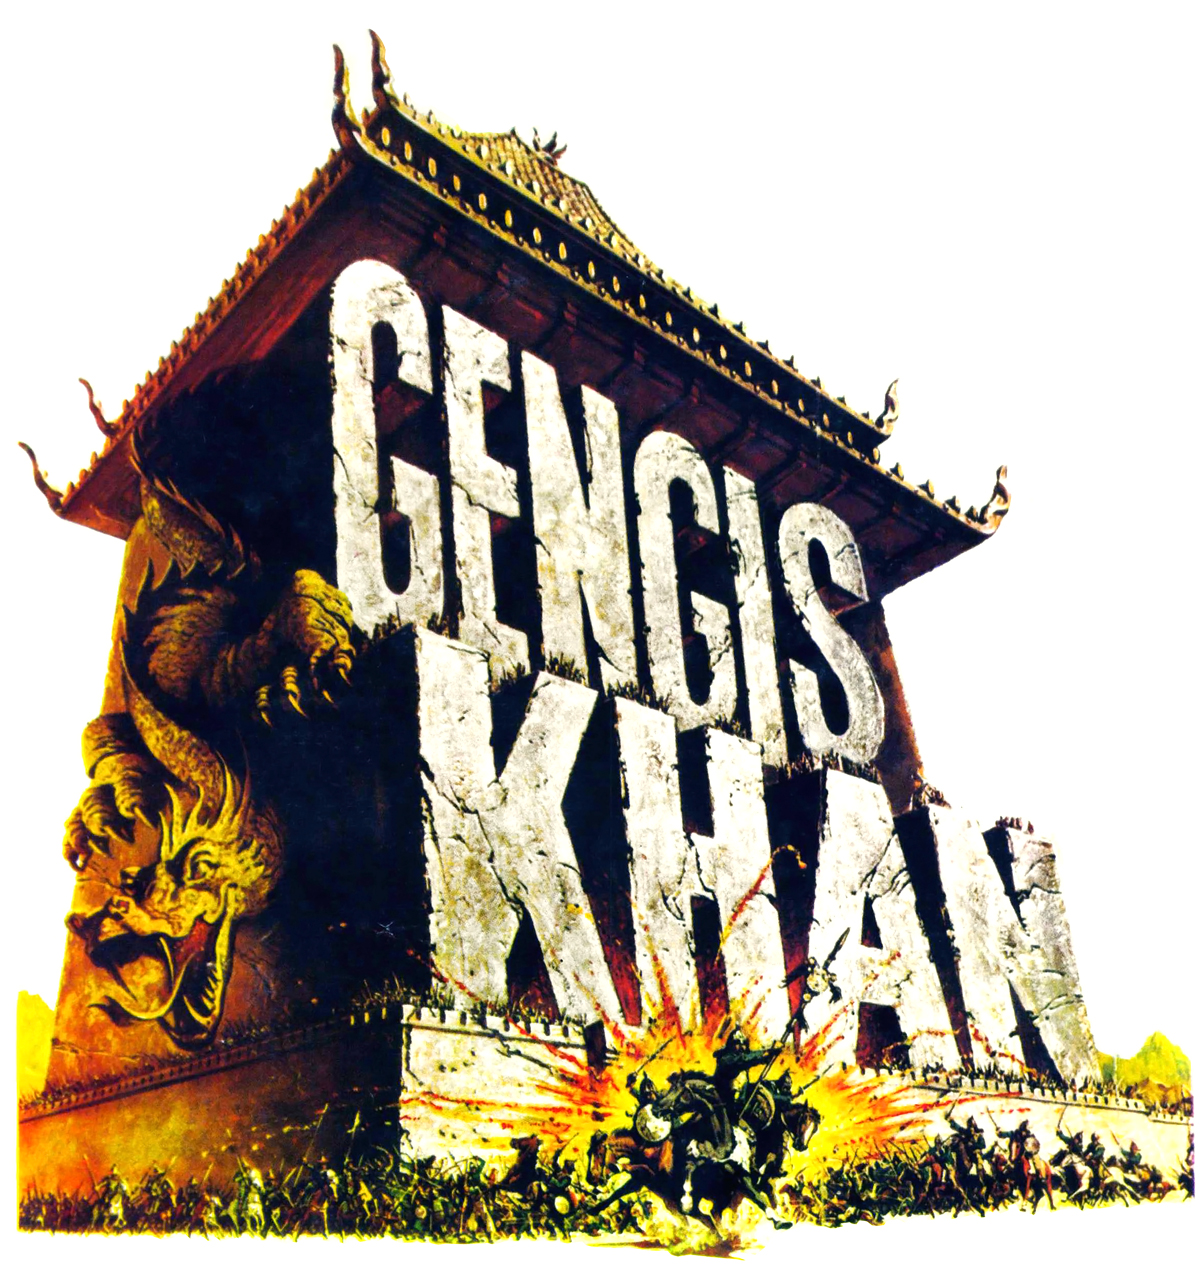 genghis khan wars